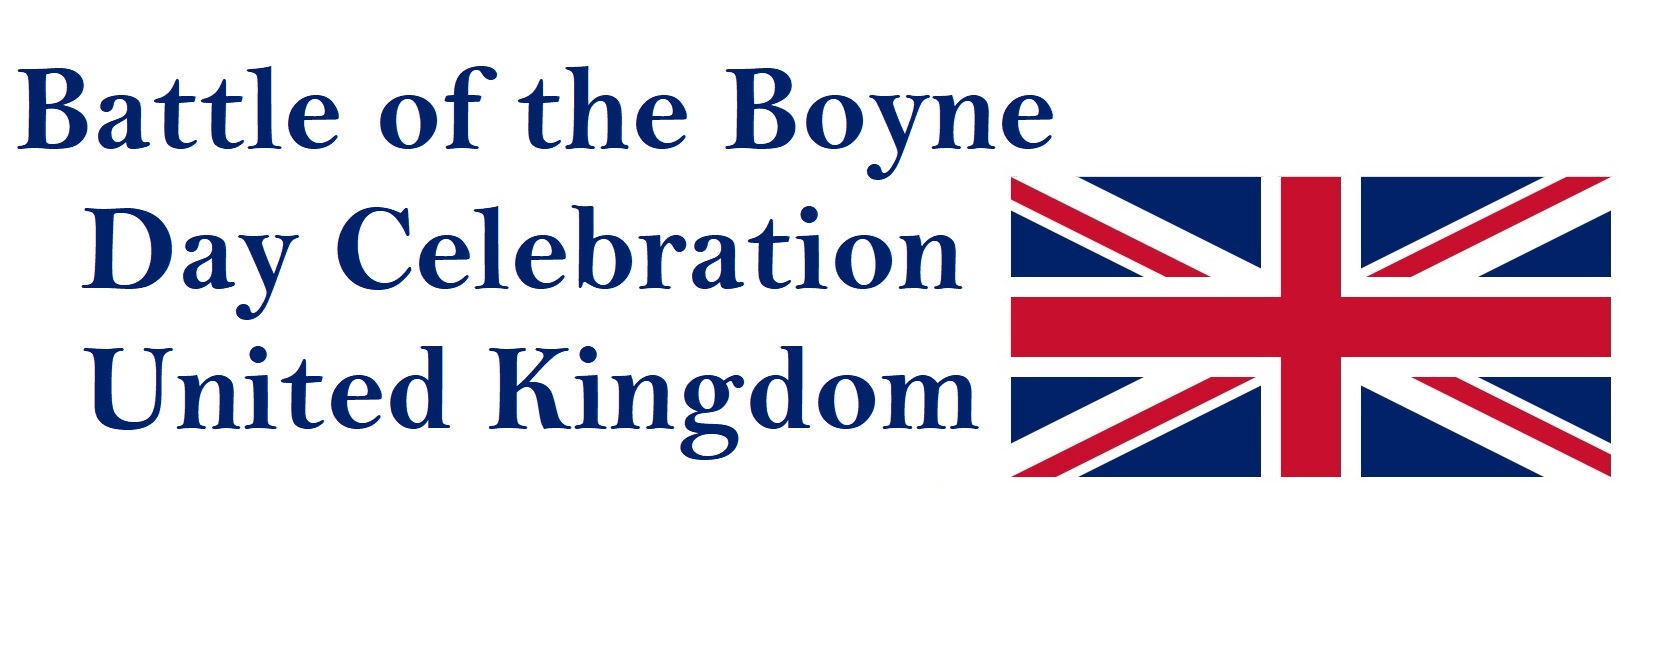 Battle of the Boyne Public Holiday in United Kingdom